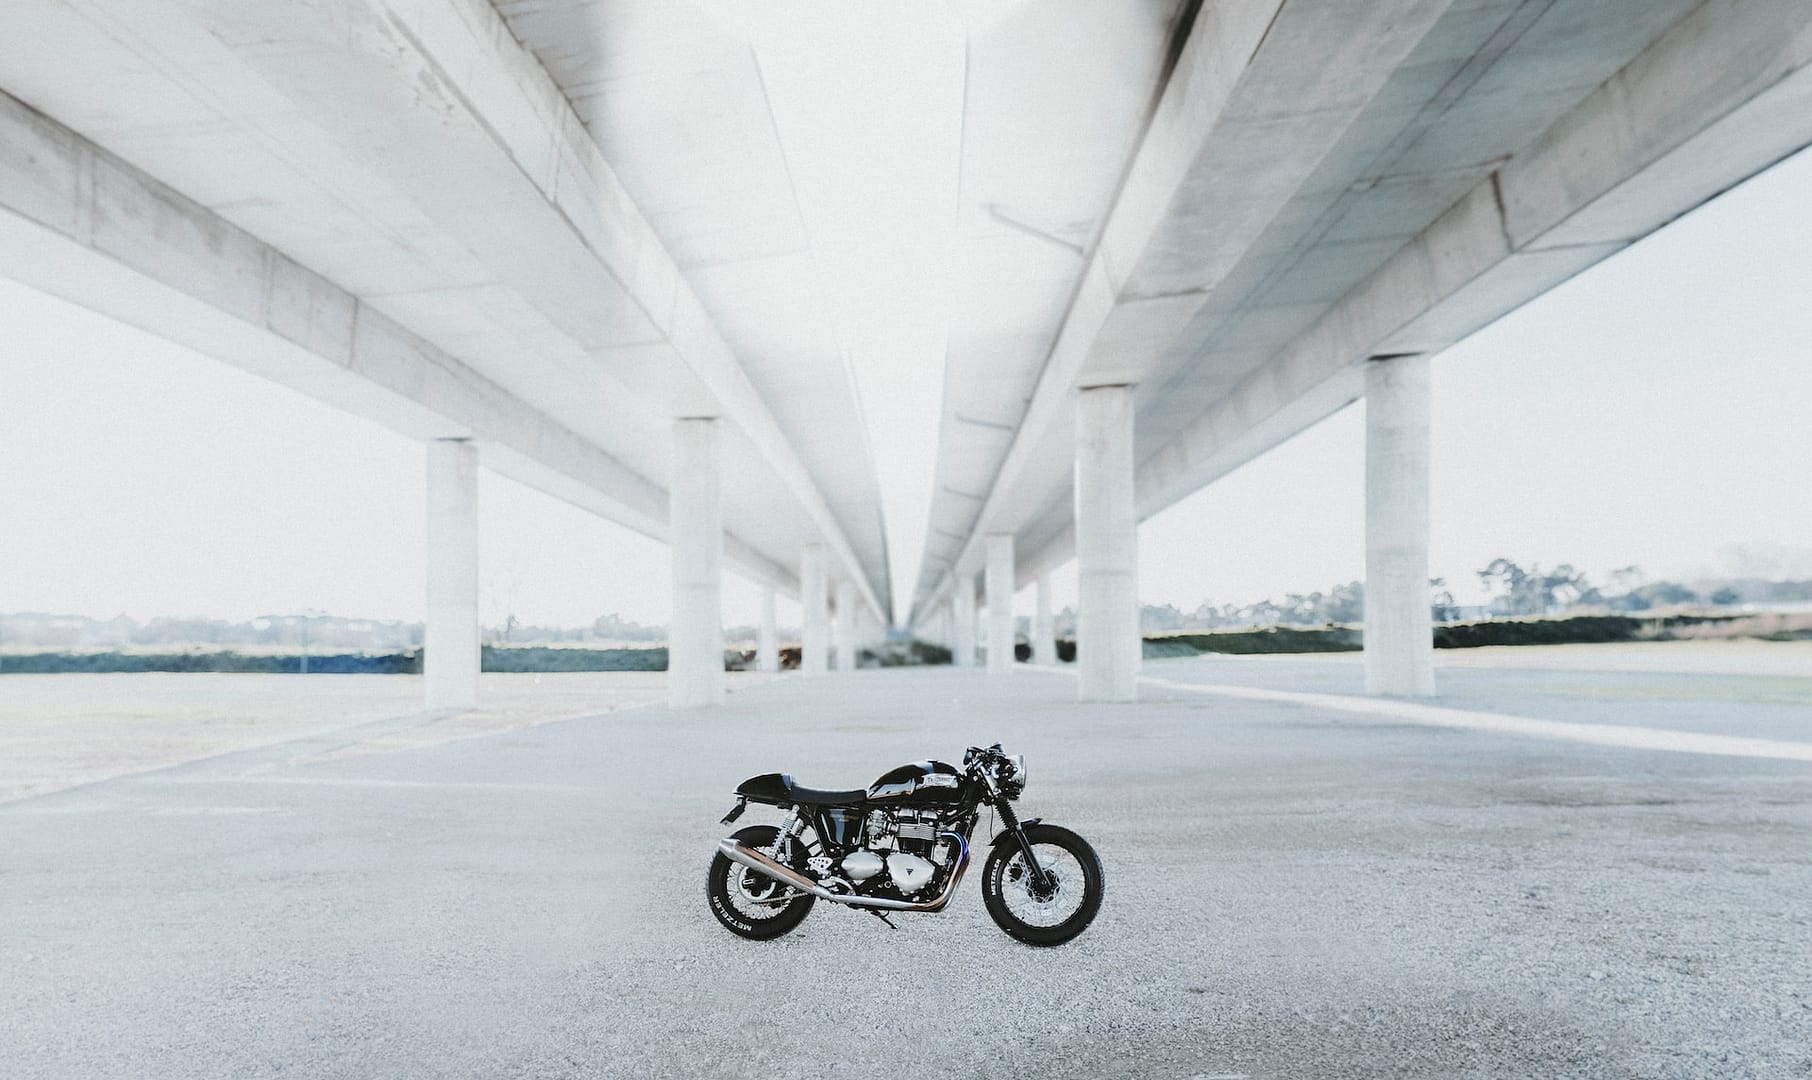 A motorbike parked under a bridge